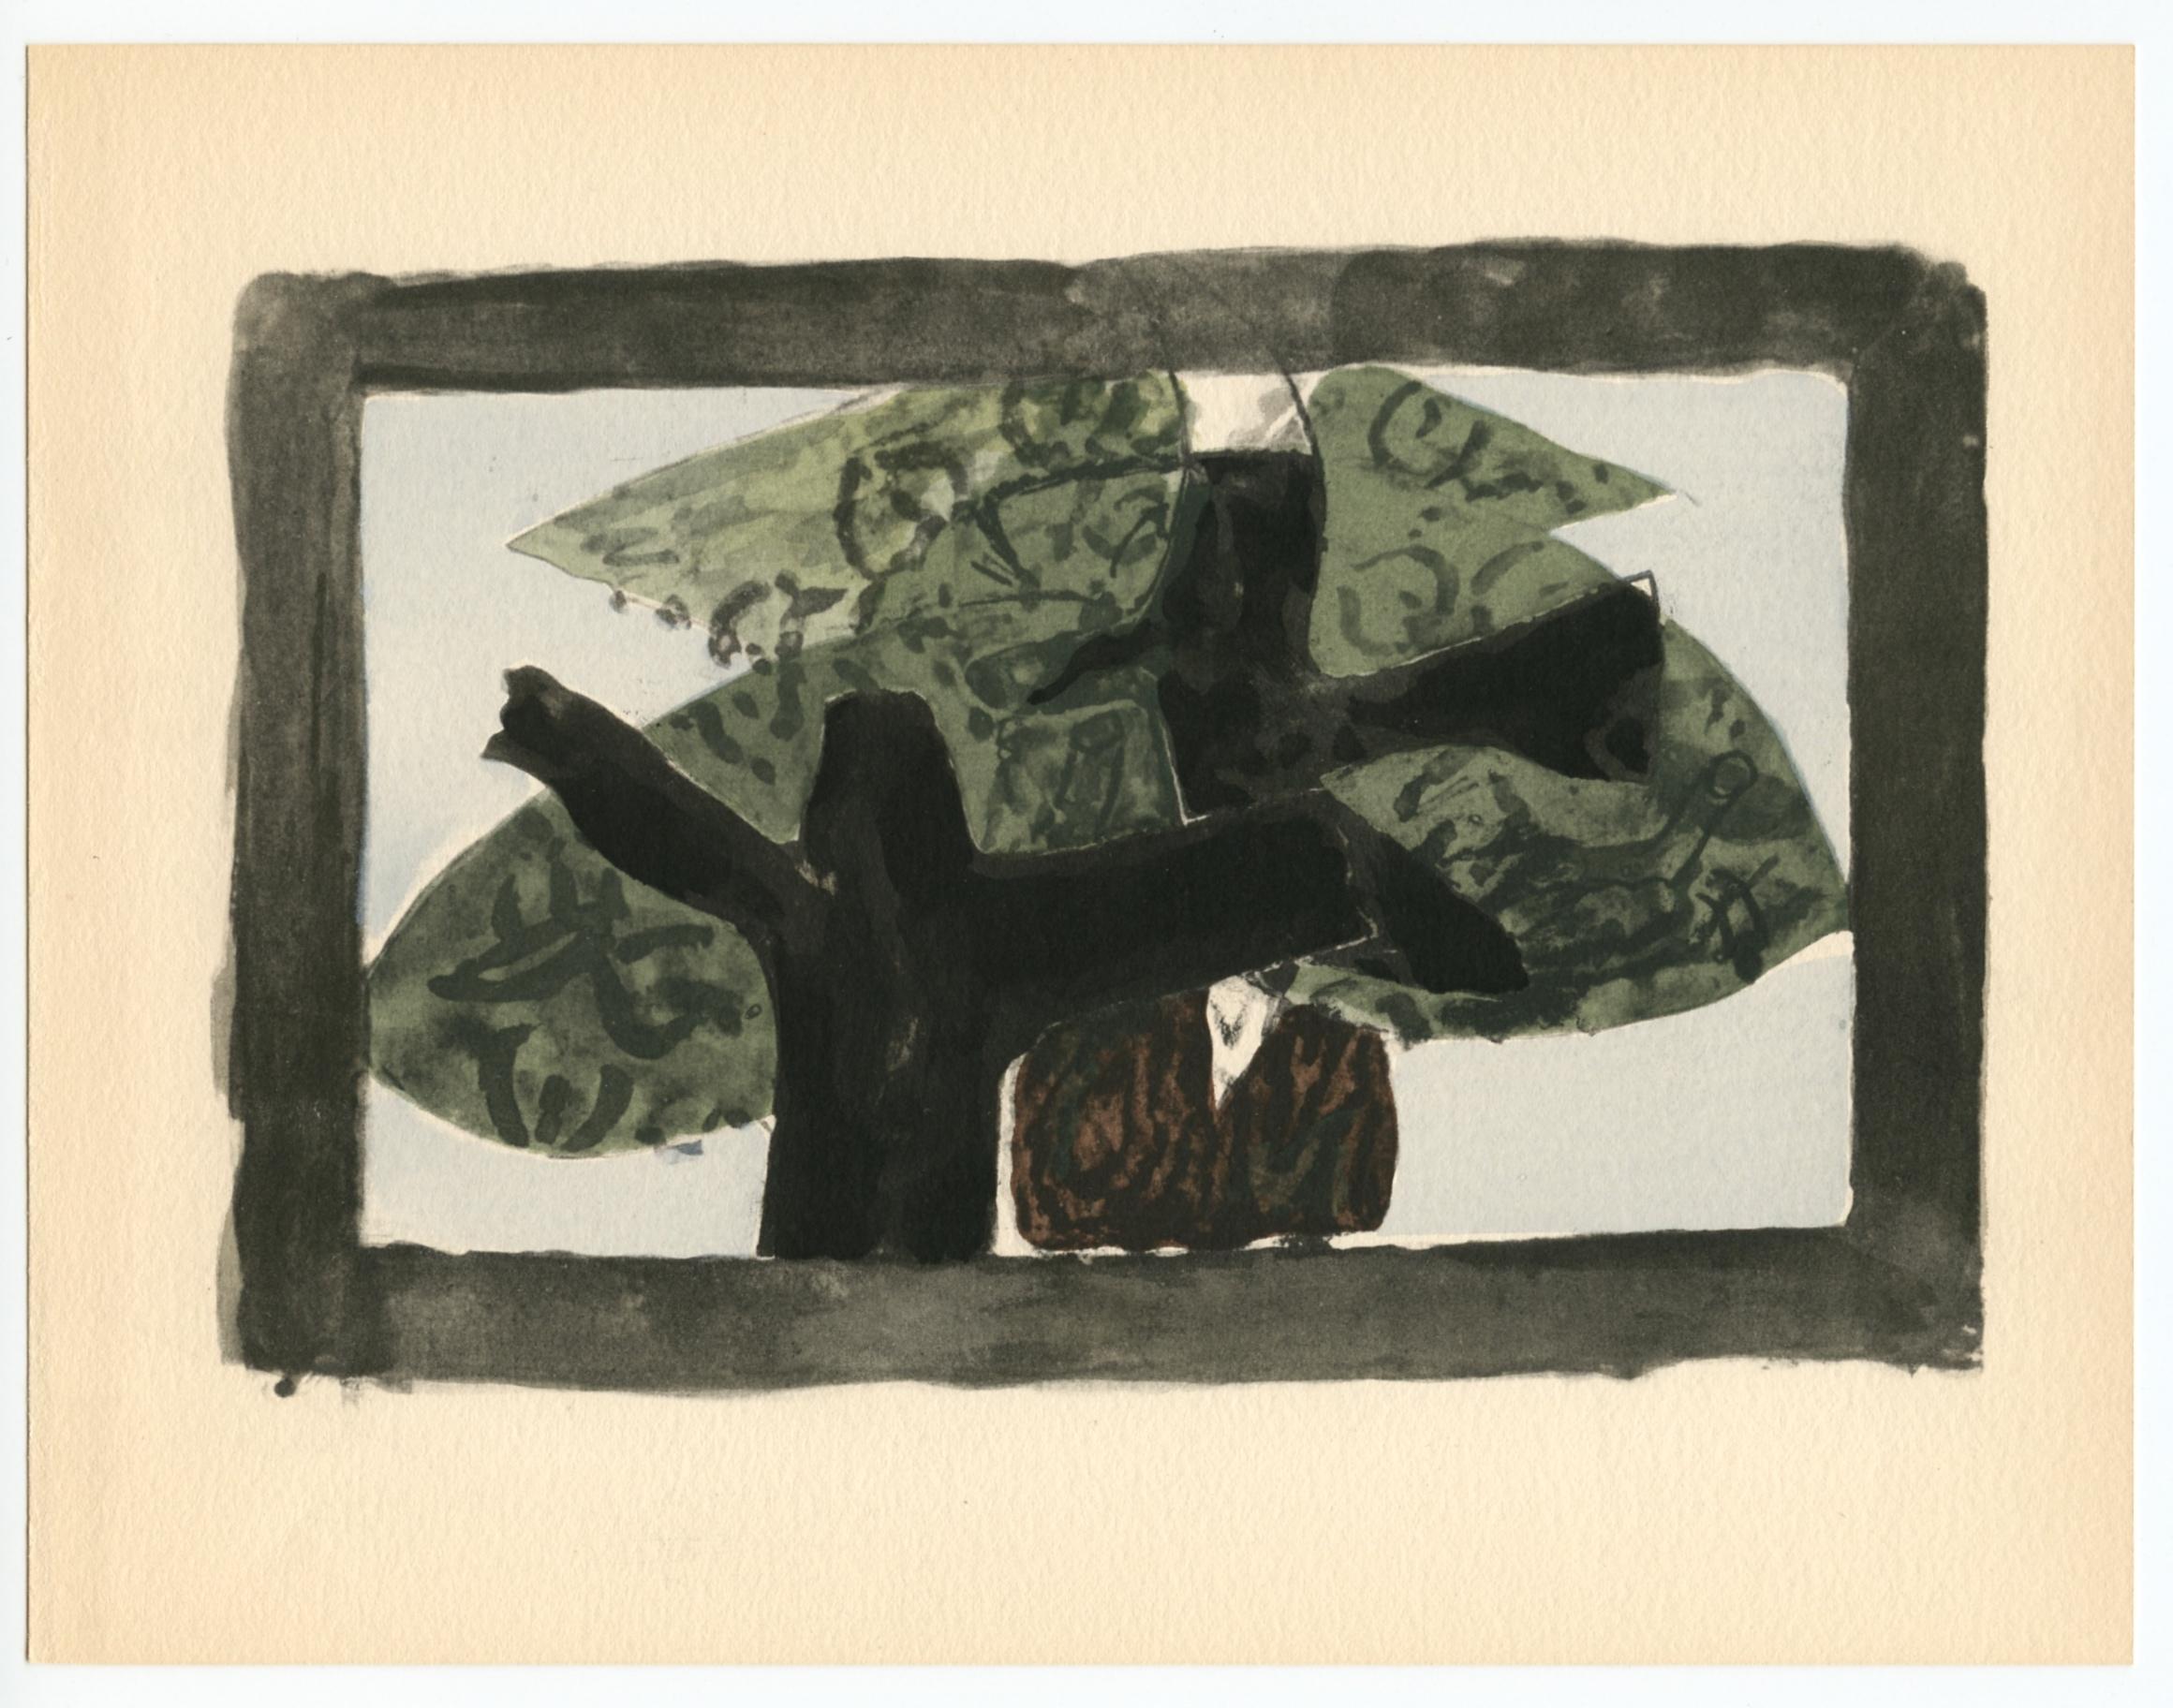 Braque, L'arbre, Georges Braque le solitaire (after) For Sale 4